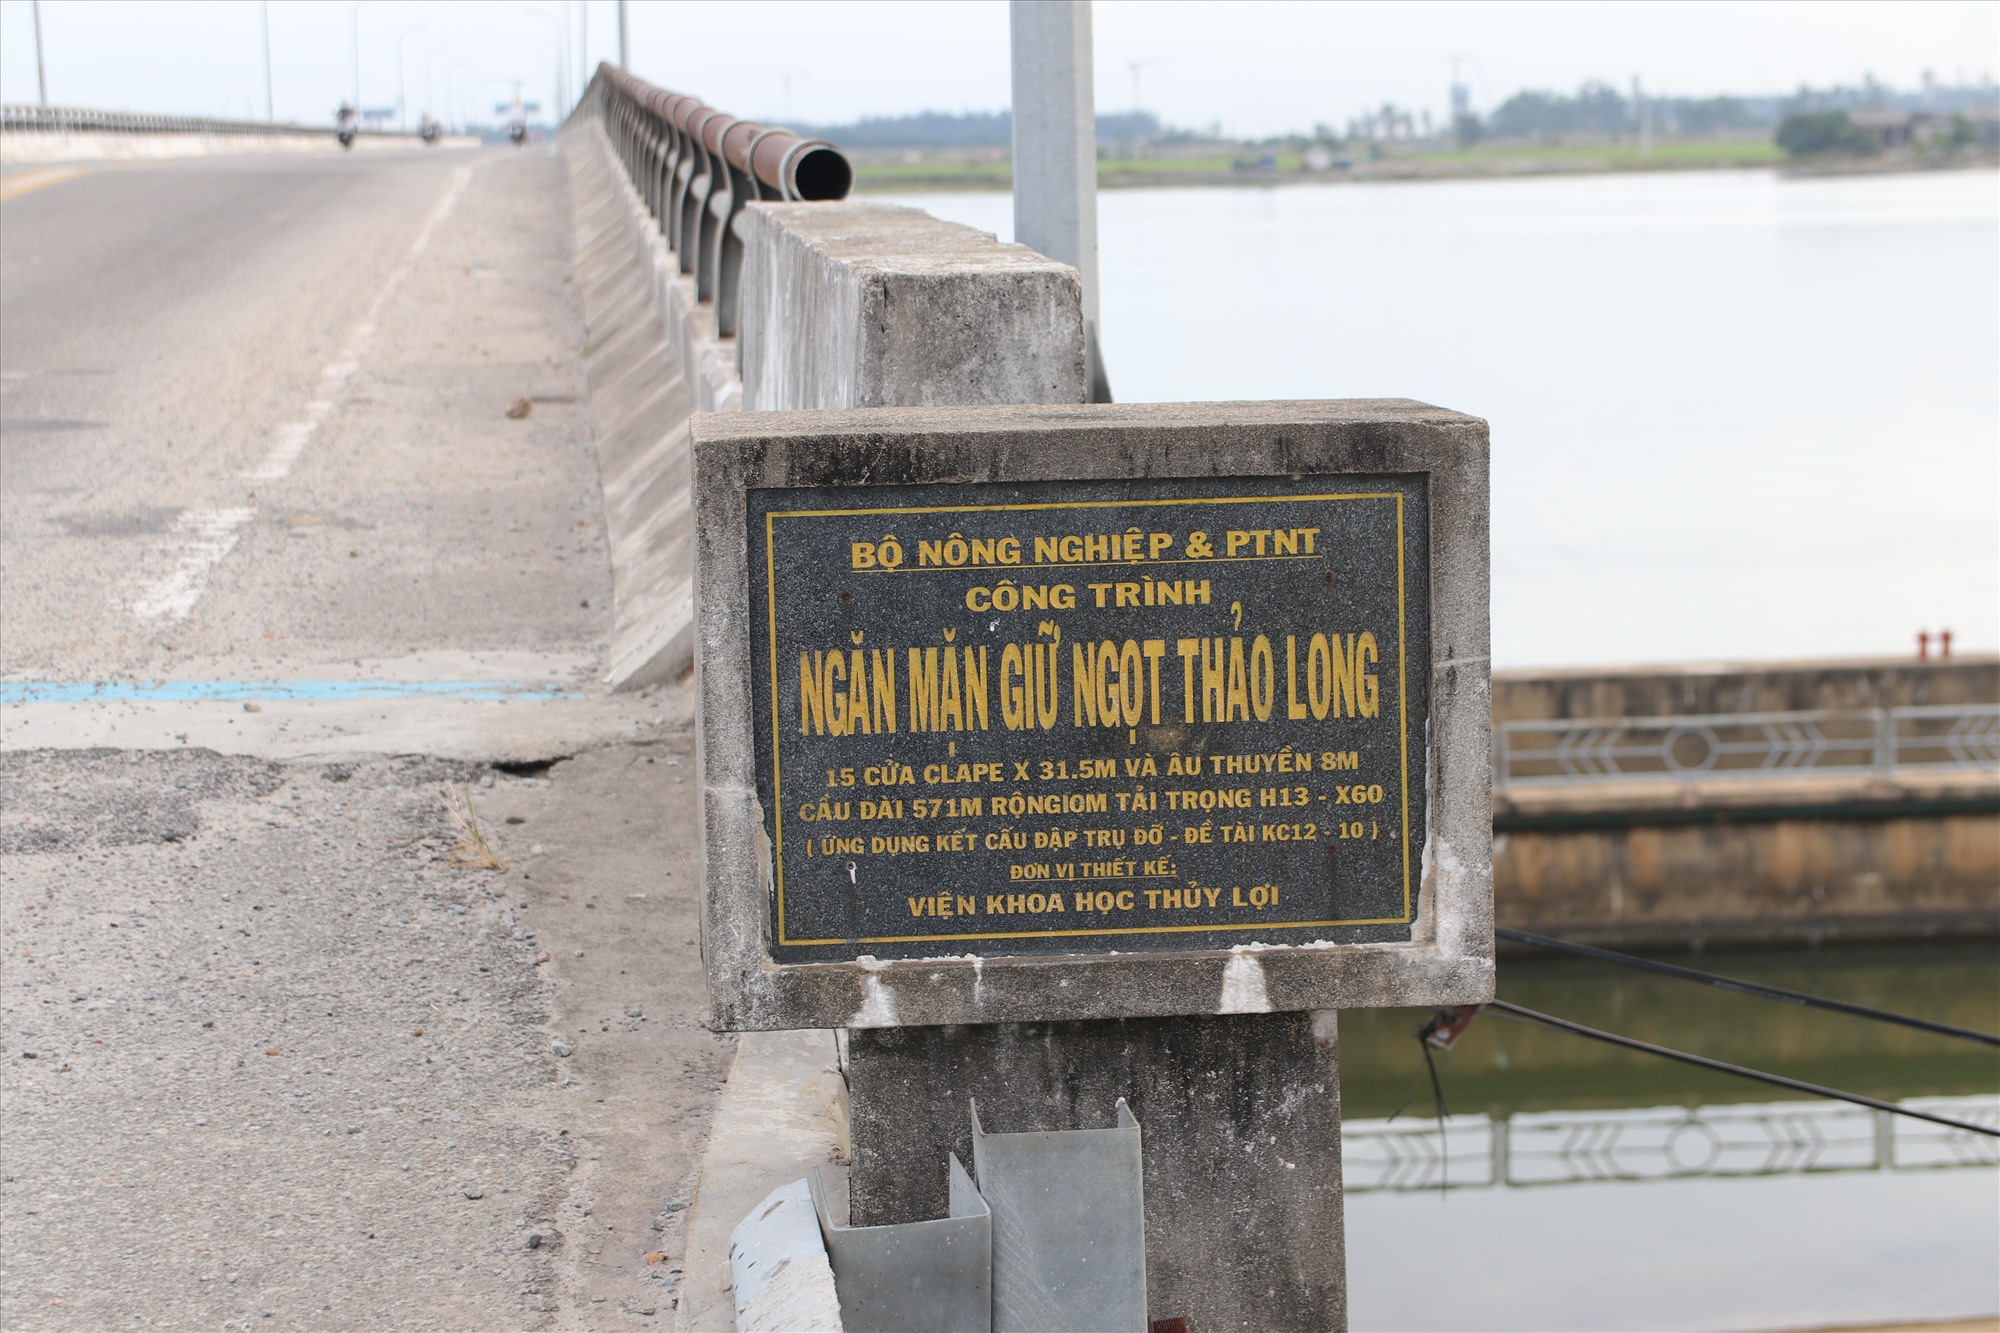  Với chiều dài 571,25m, công trình này nối đôi bờ bắc và nam sông Hương, bắc qua hai xã Hương Phong và Phú Thanh của TP Huế. Được biết, con đập Thảo Long được các chuyên gia đánh giá là công trình ngăn mặn, giữ ngọt lớn nhất khu vực Đông Nam Á. 